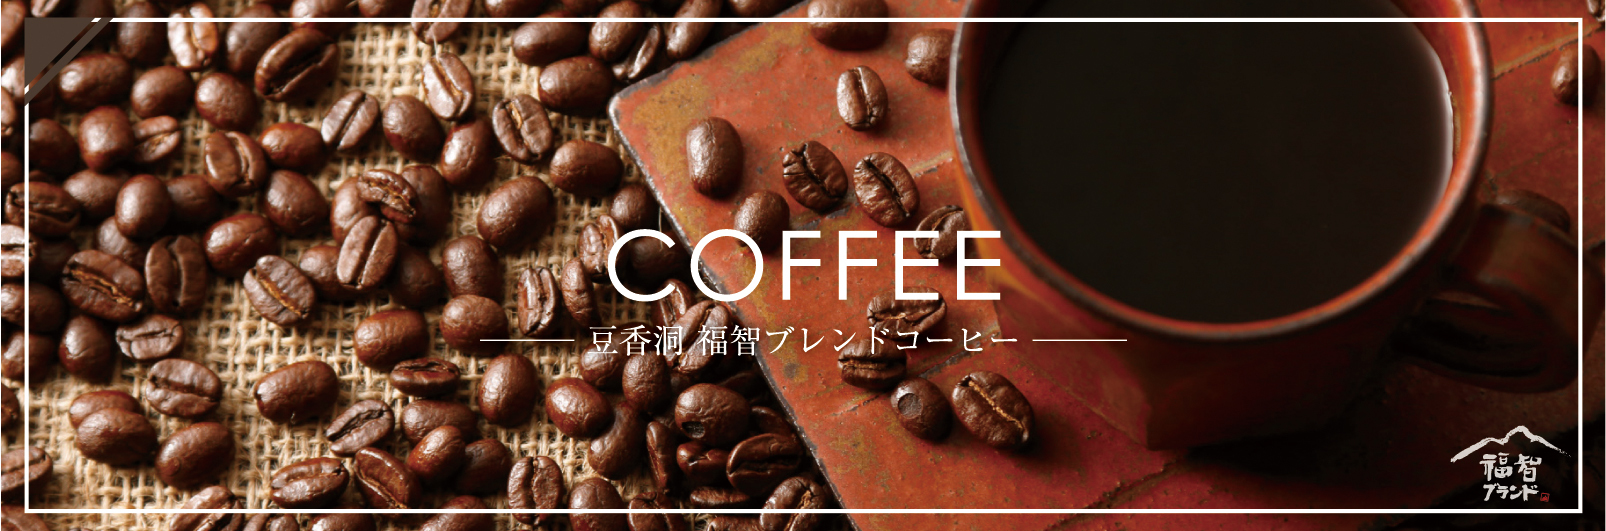 福智ブレンドコーヒーのイメージ画像